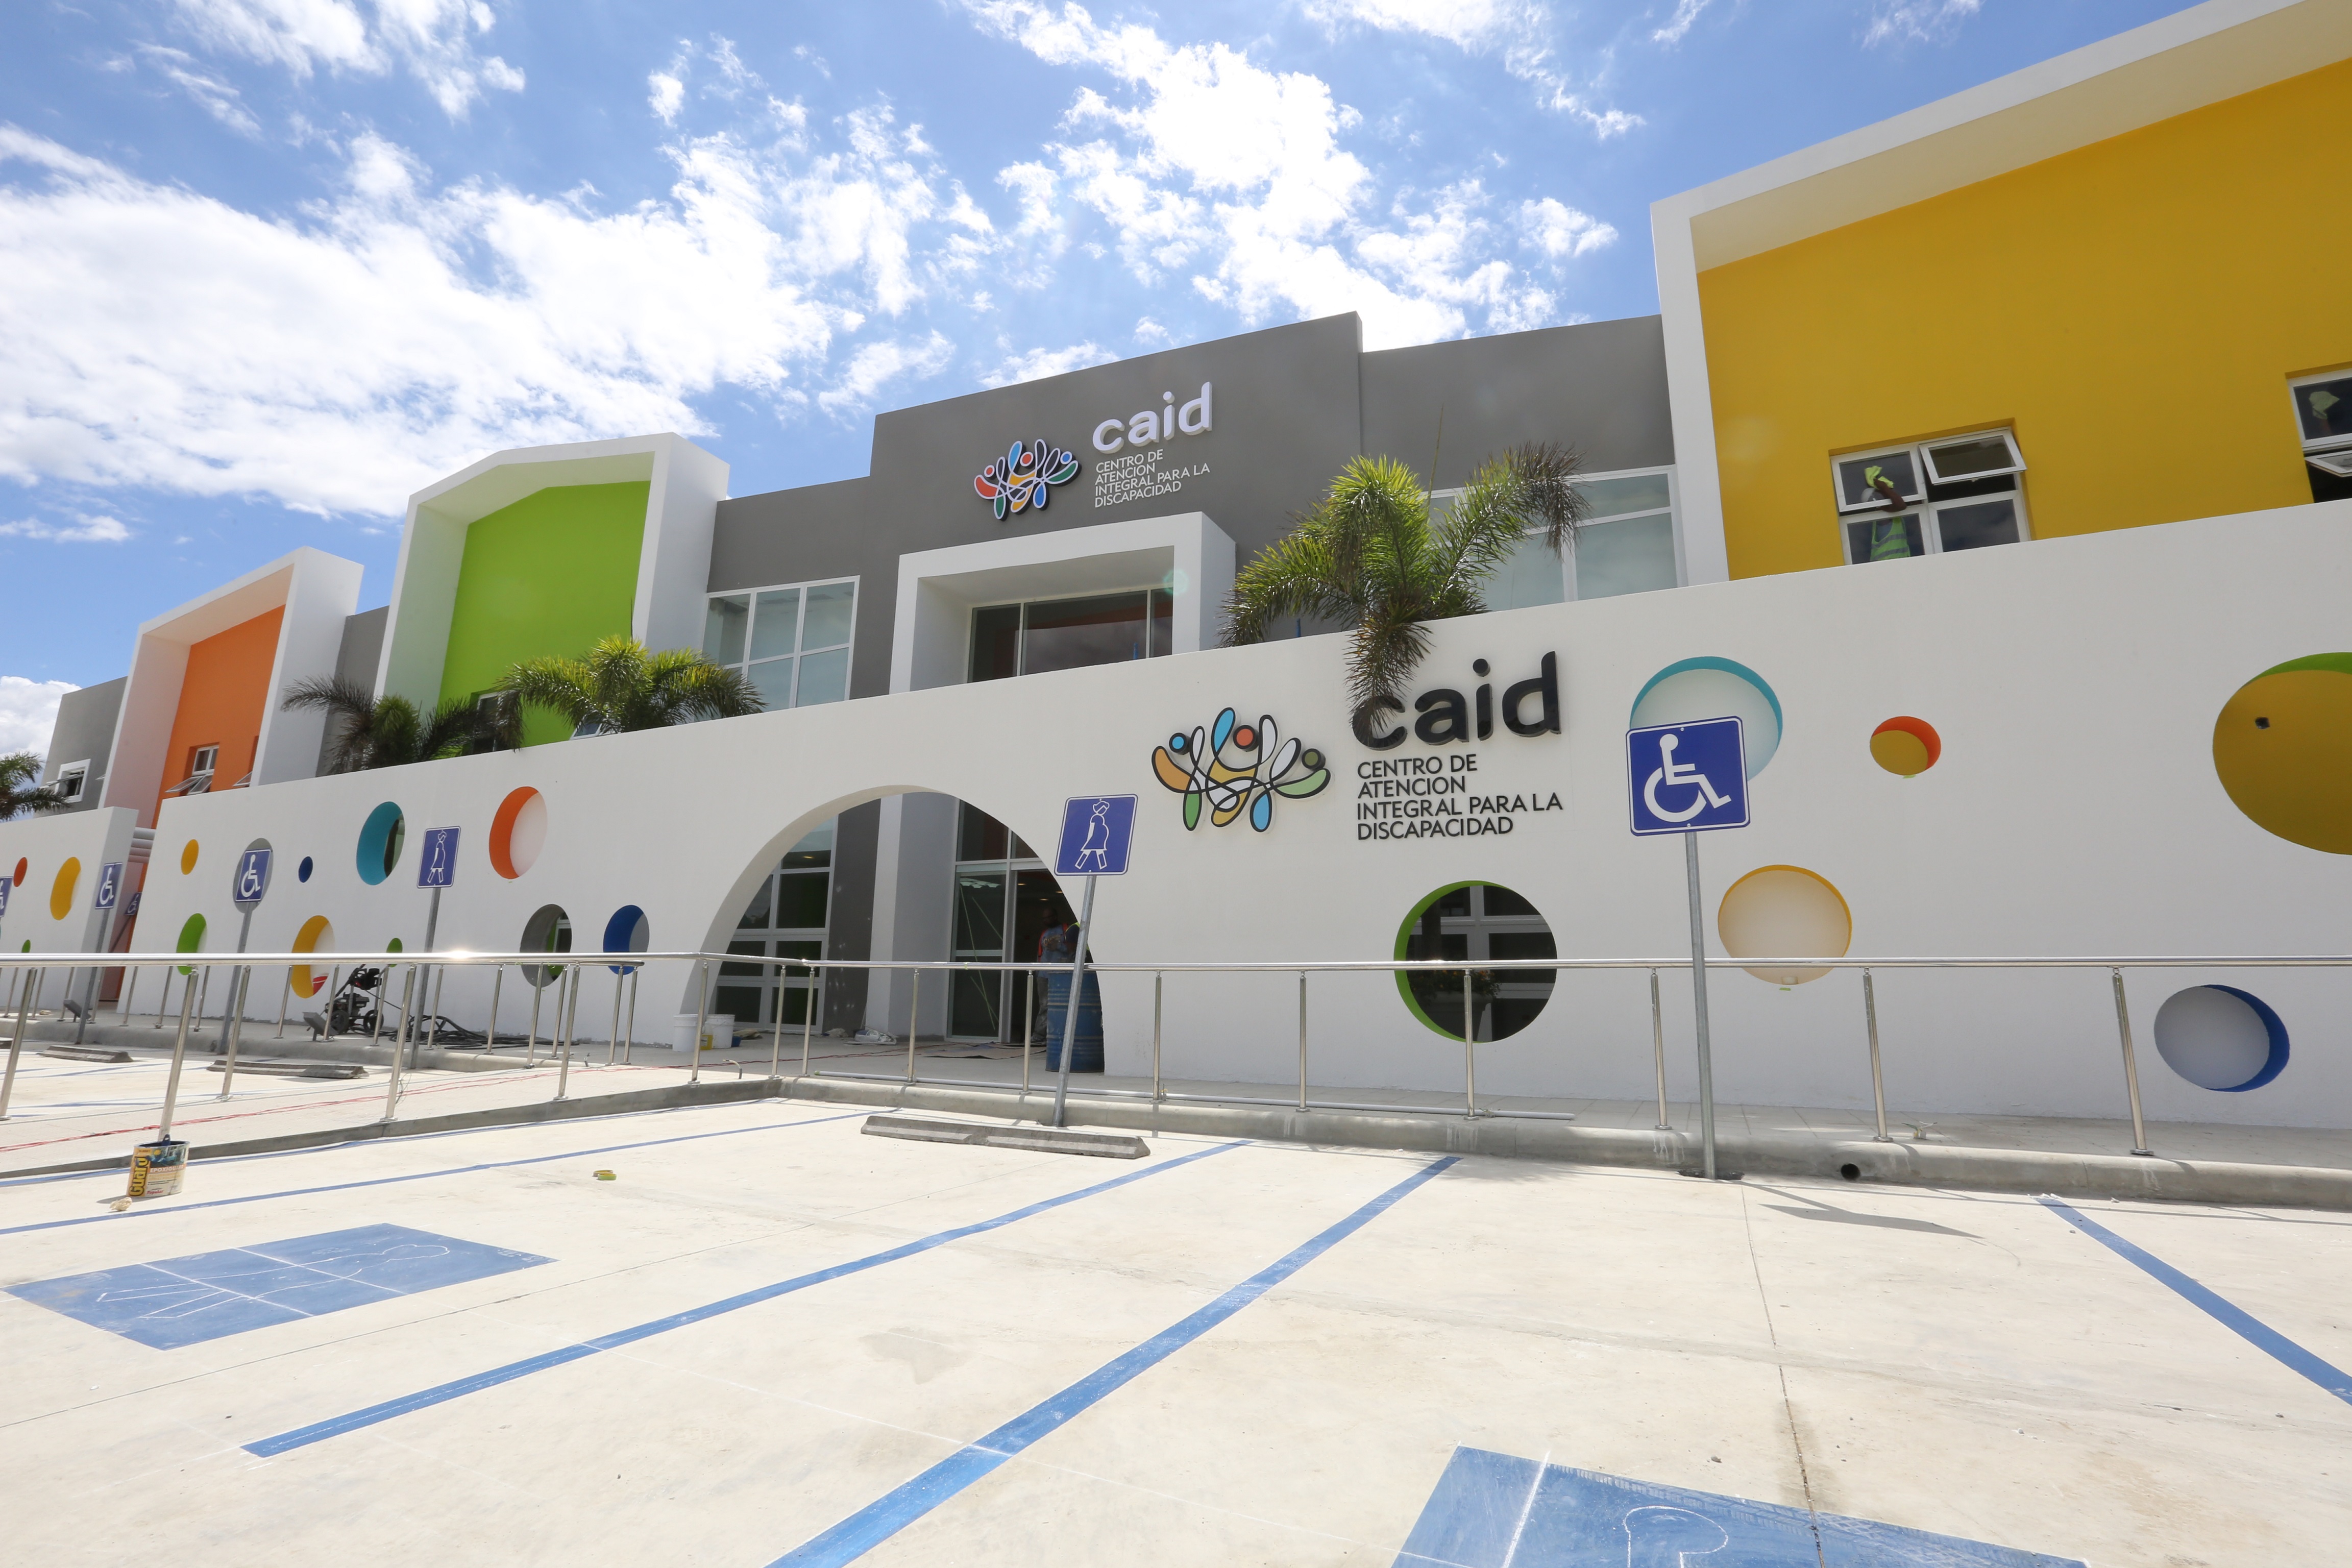  Suspenden hasta el lunes servicios en CAID Santo Domingo, Santiago y San Juan